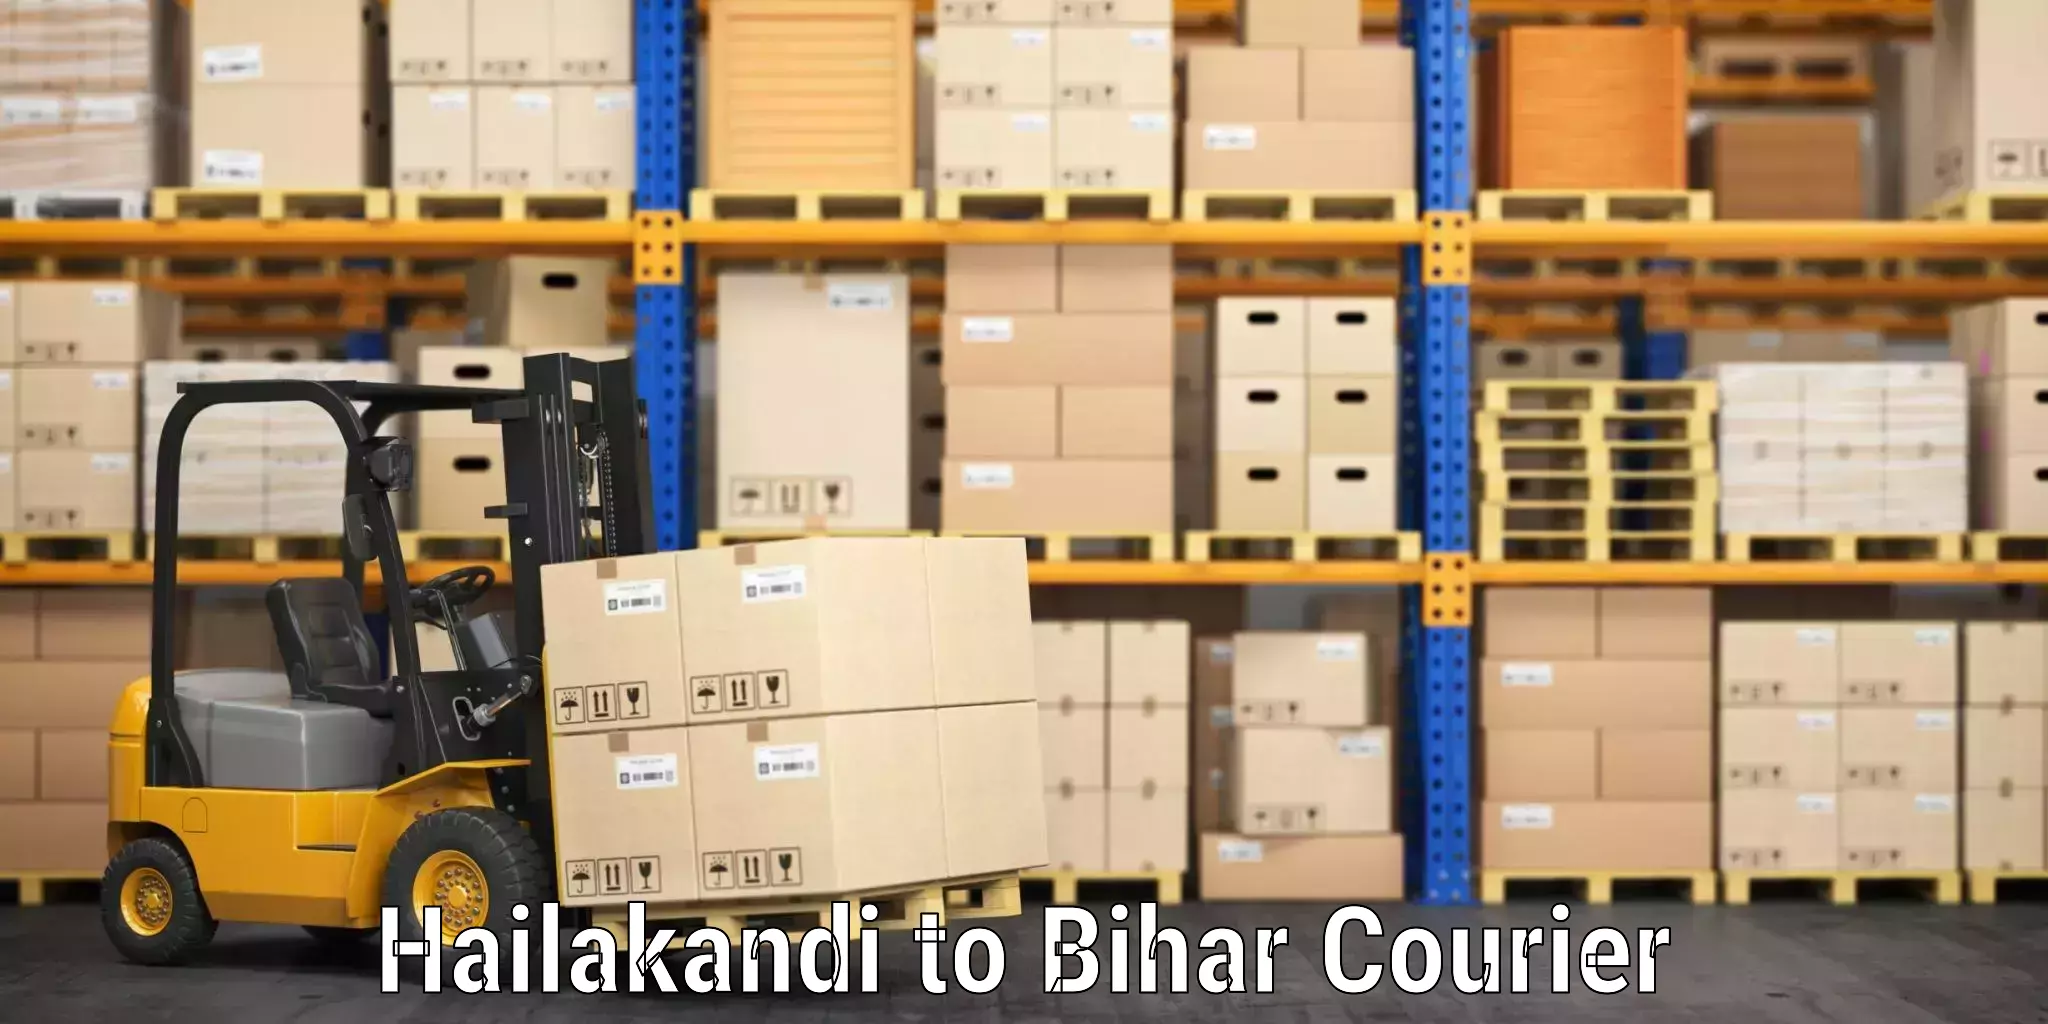 Baggage transport updates Hailakandi to Bihar